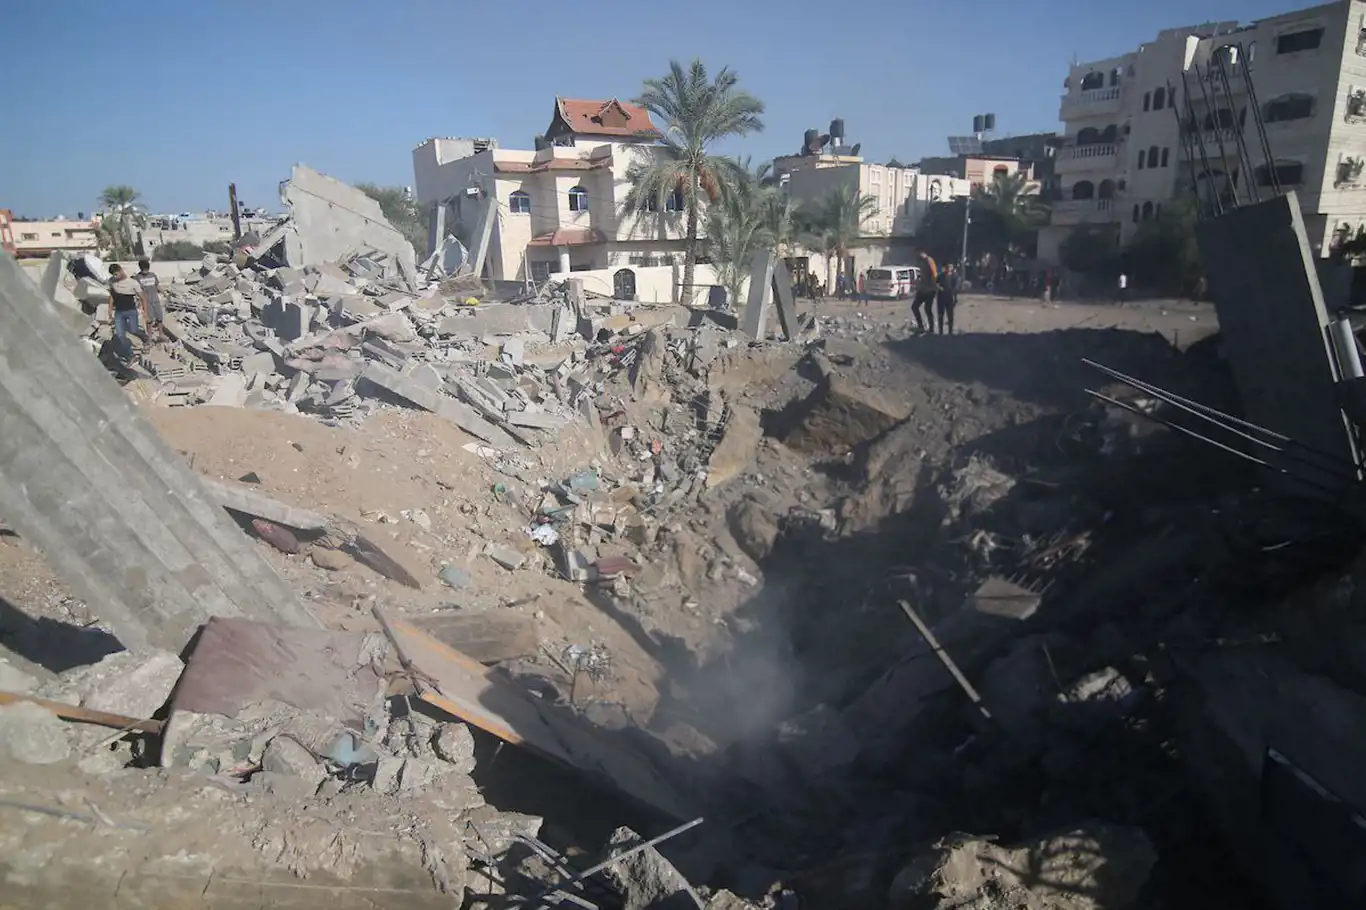 İşgalci rejim Gazze'yi nükleer bombanın dörtte birine eşdeğer bombalarla vurdu